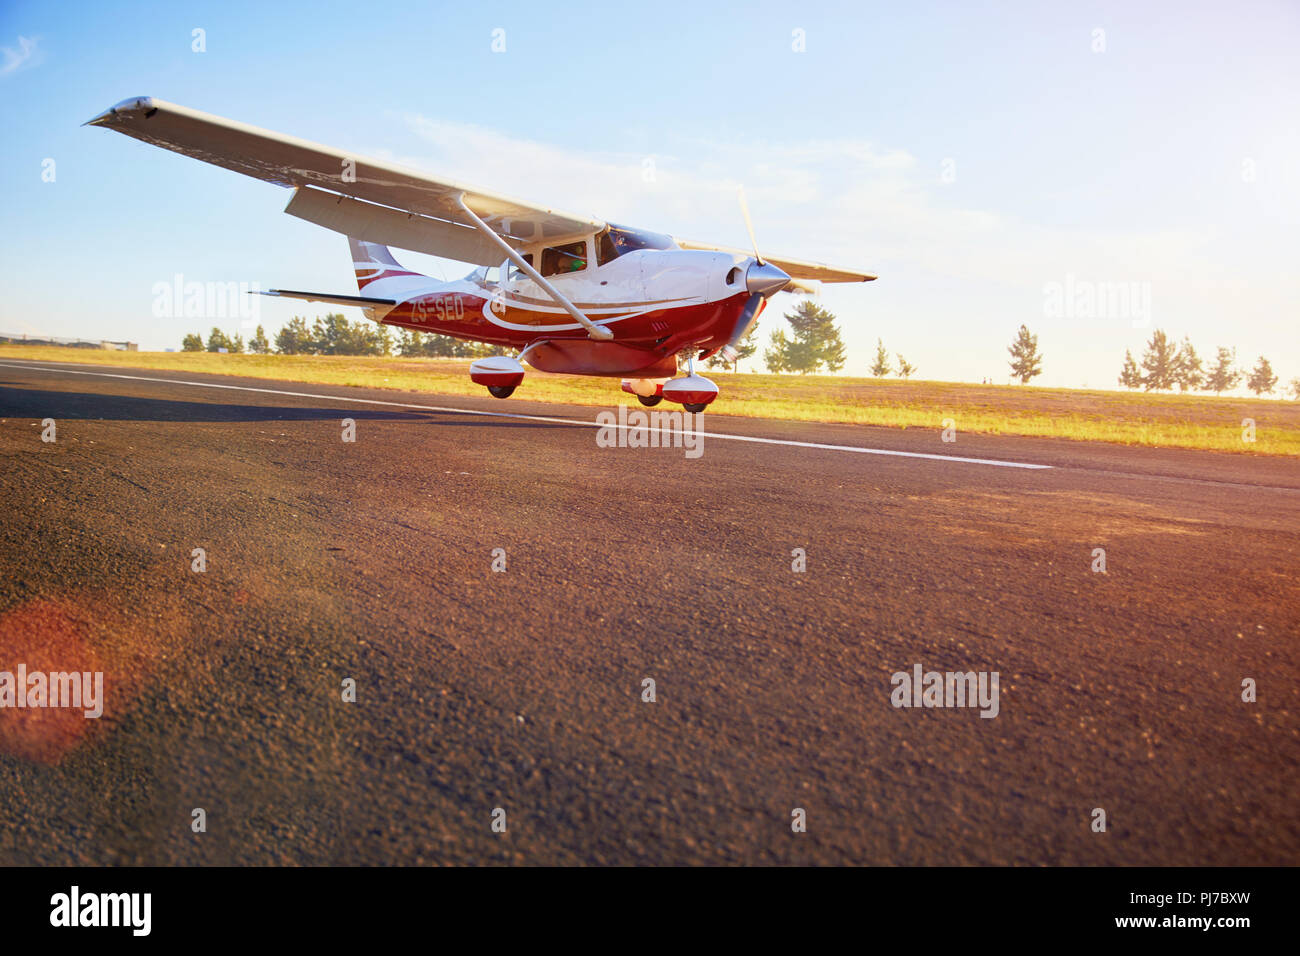 Prop Flugzeug Landung auf sonnigen Asphalt Stockfoto